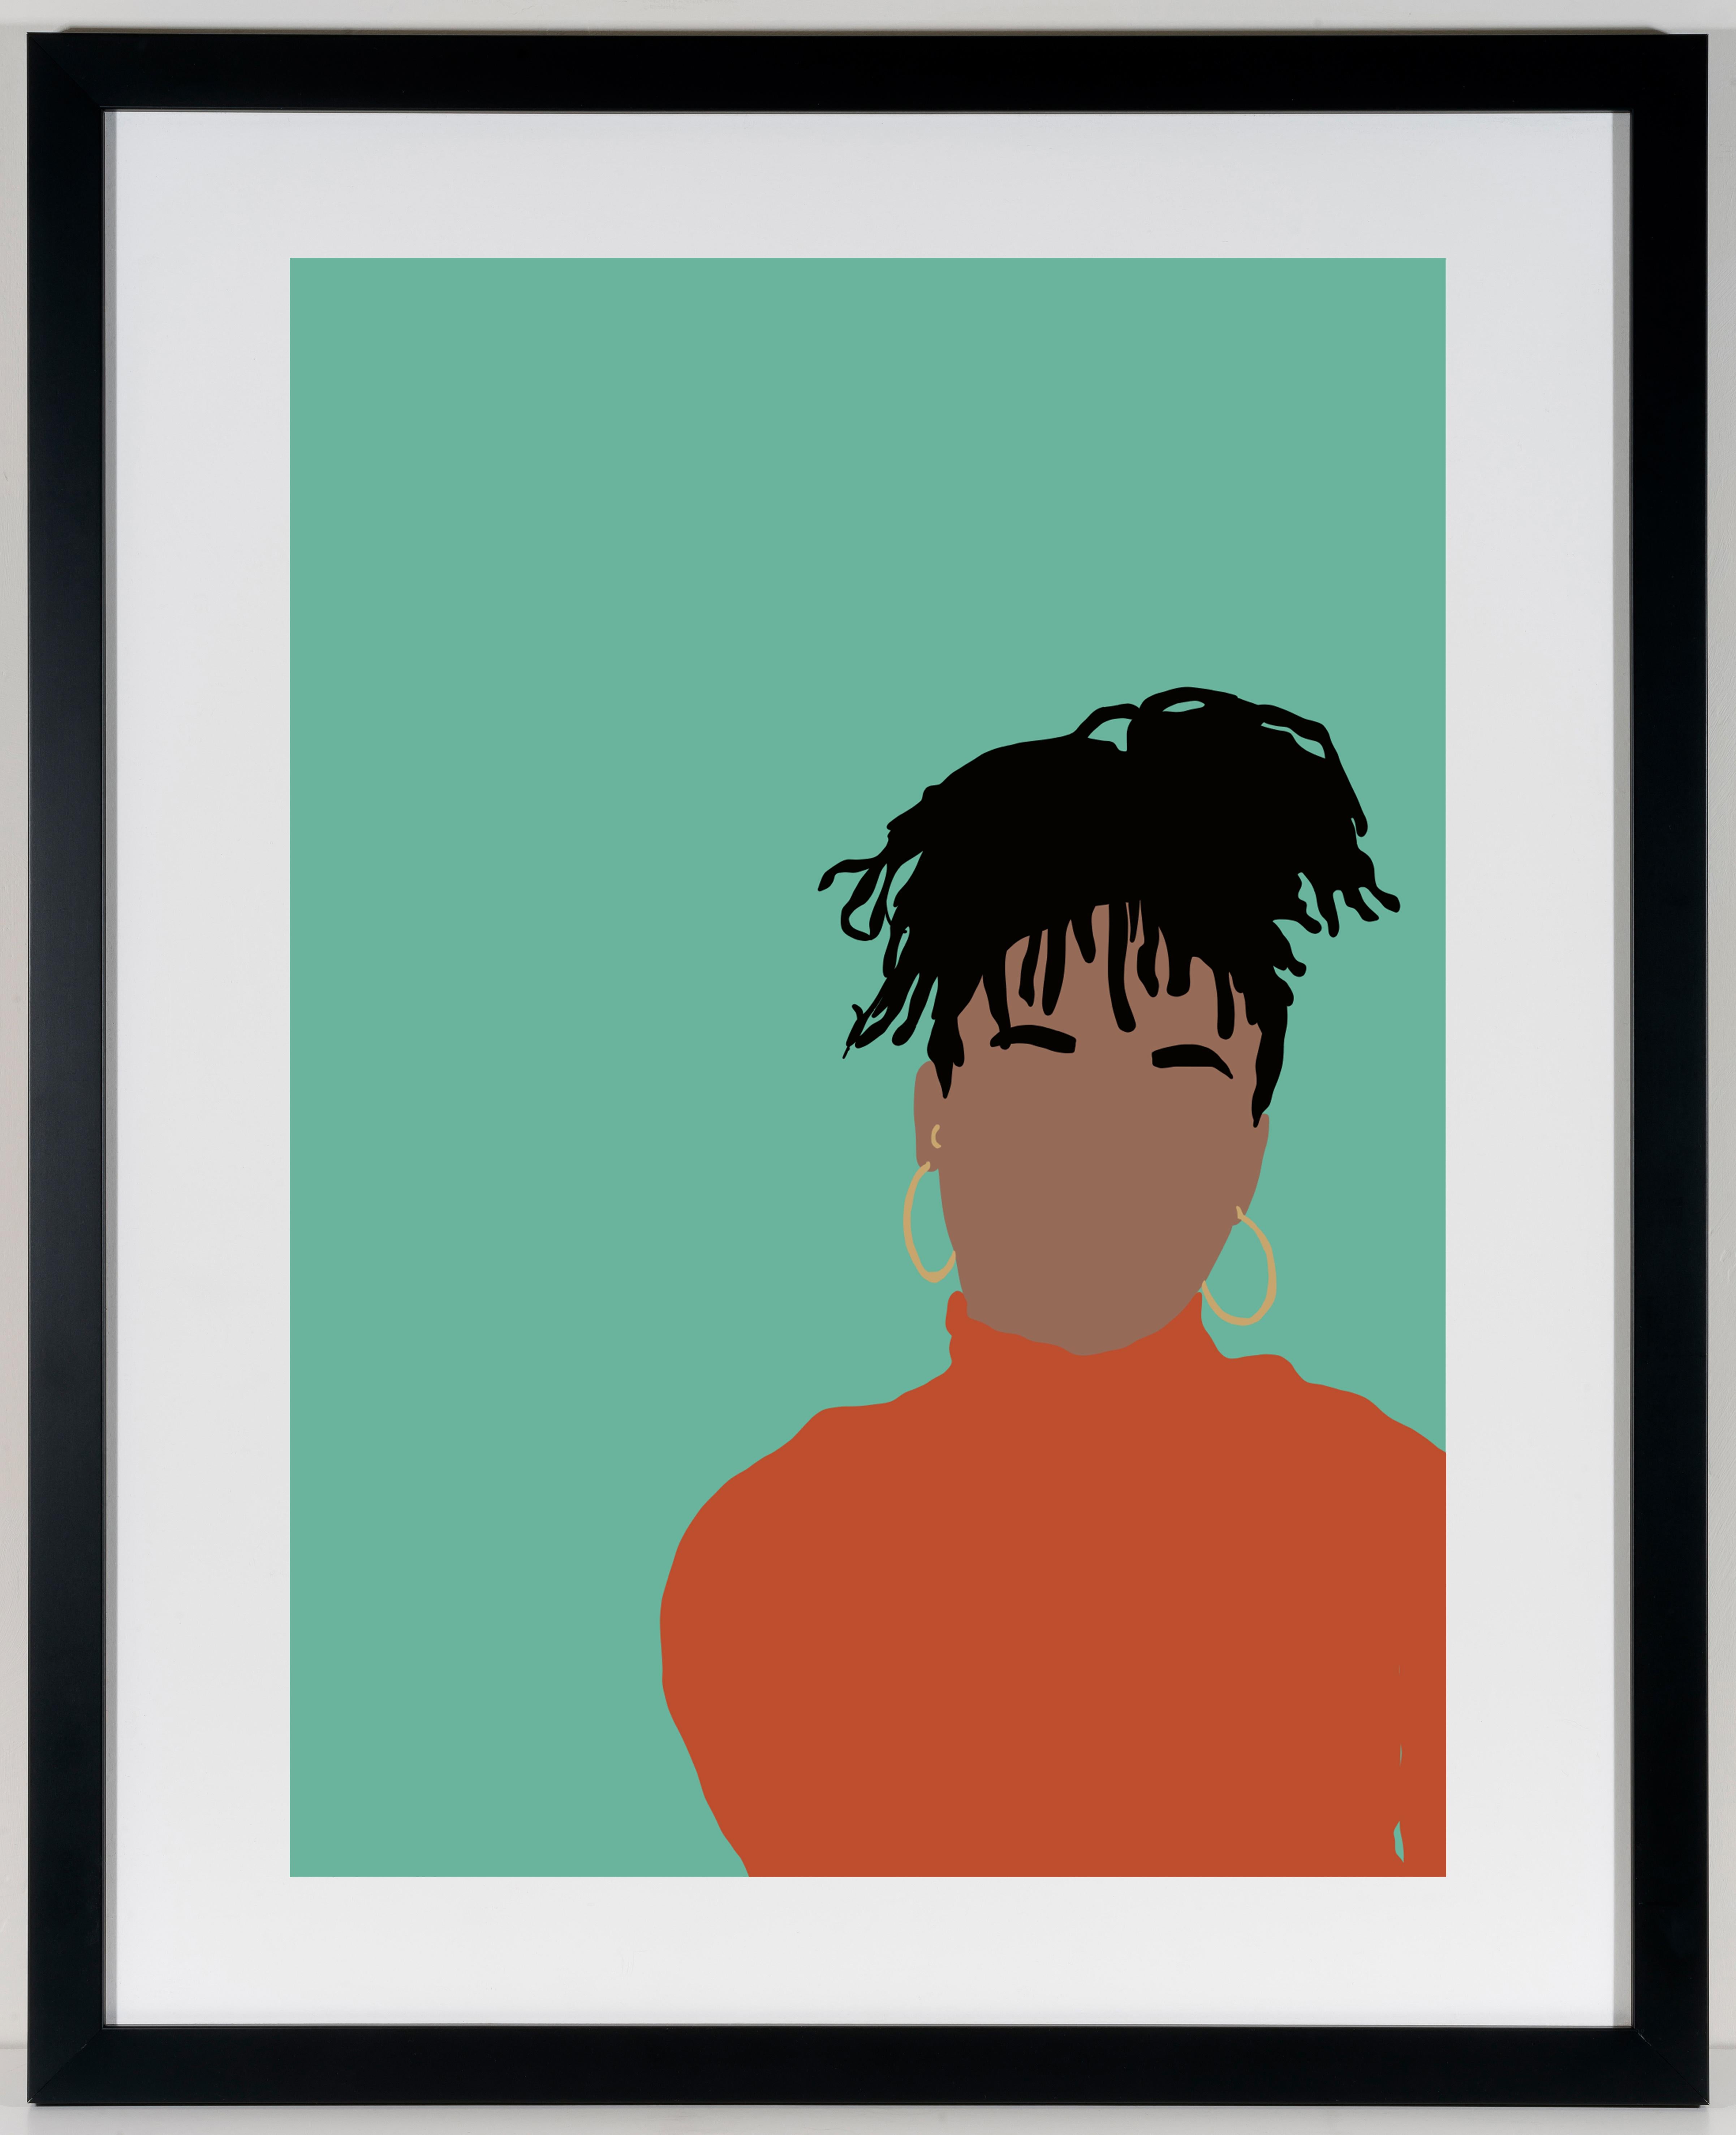 Real - Digitale Illustration Schwarze/Braune Figur mit Zifferblättern in Blau + Orange  (Zeitgenössisch), Print, von Samantha Viotty